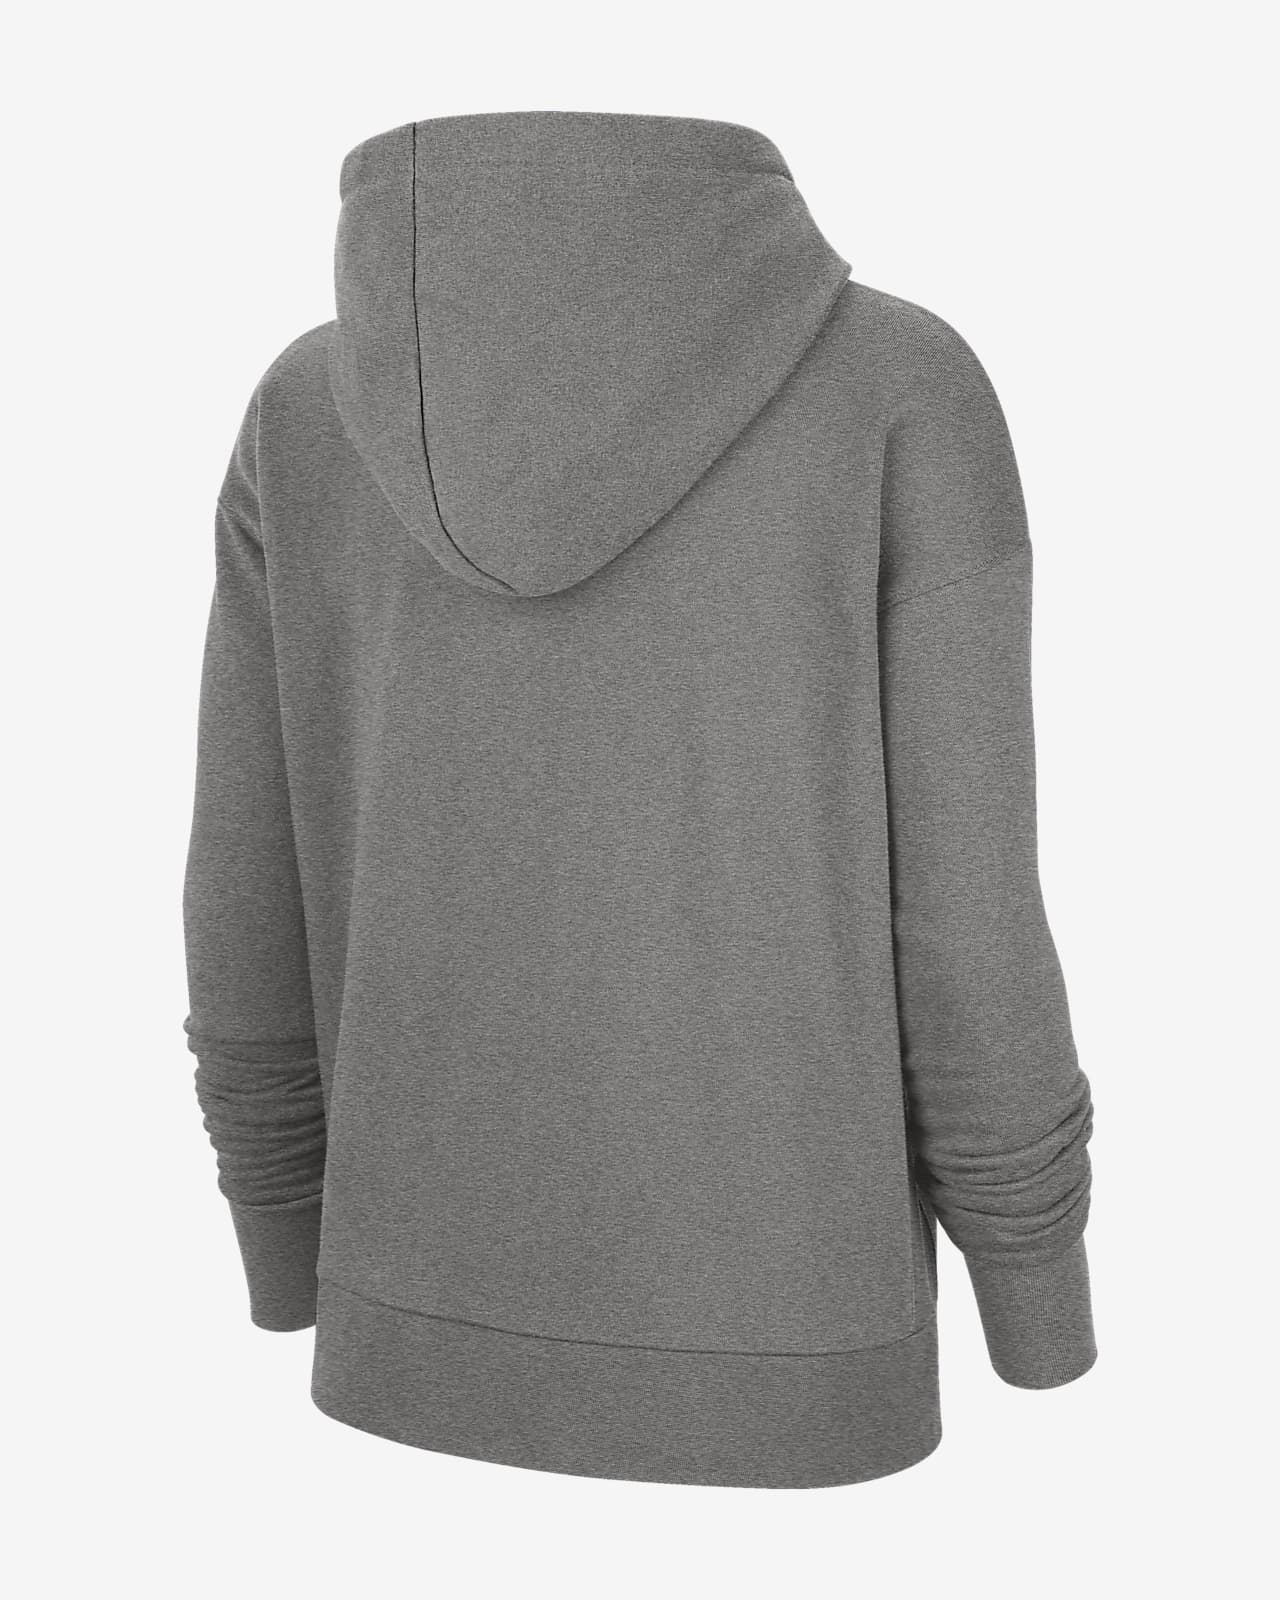 womens nike jacket with hood